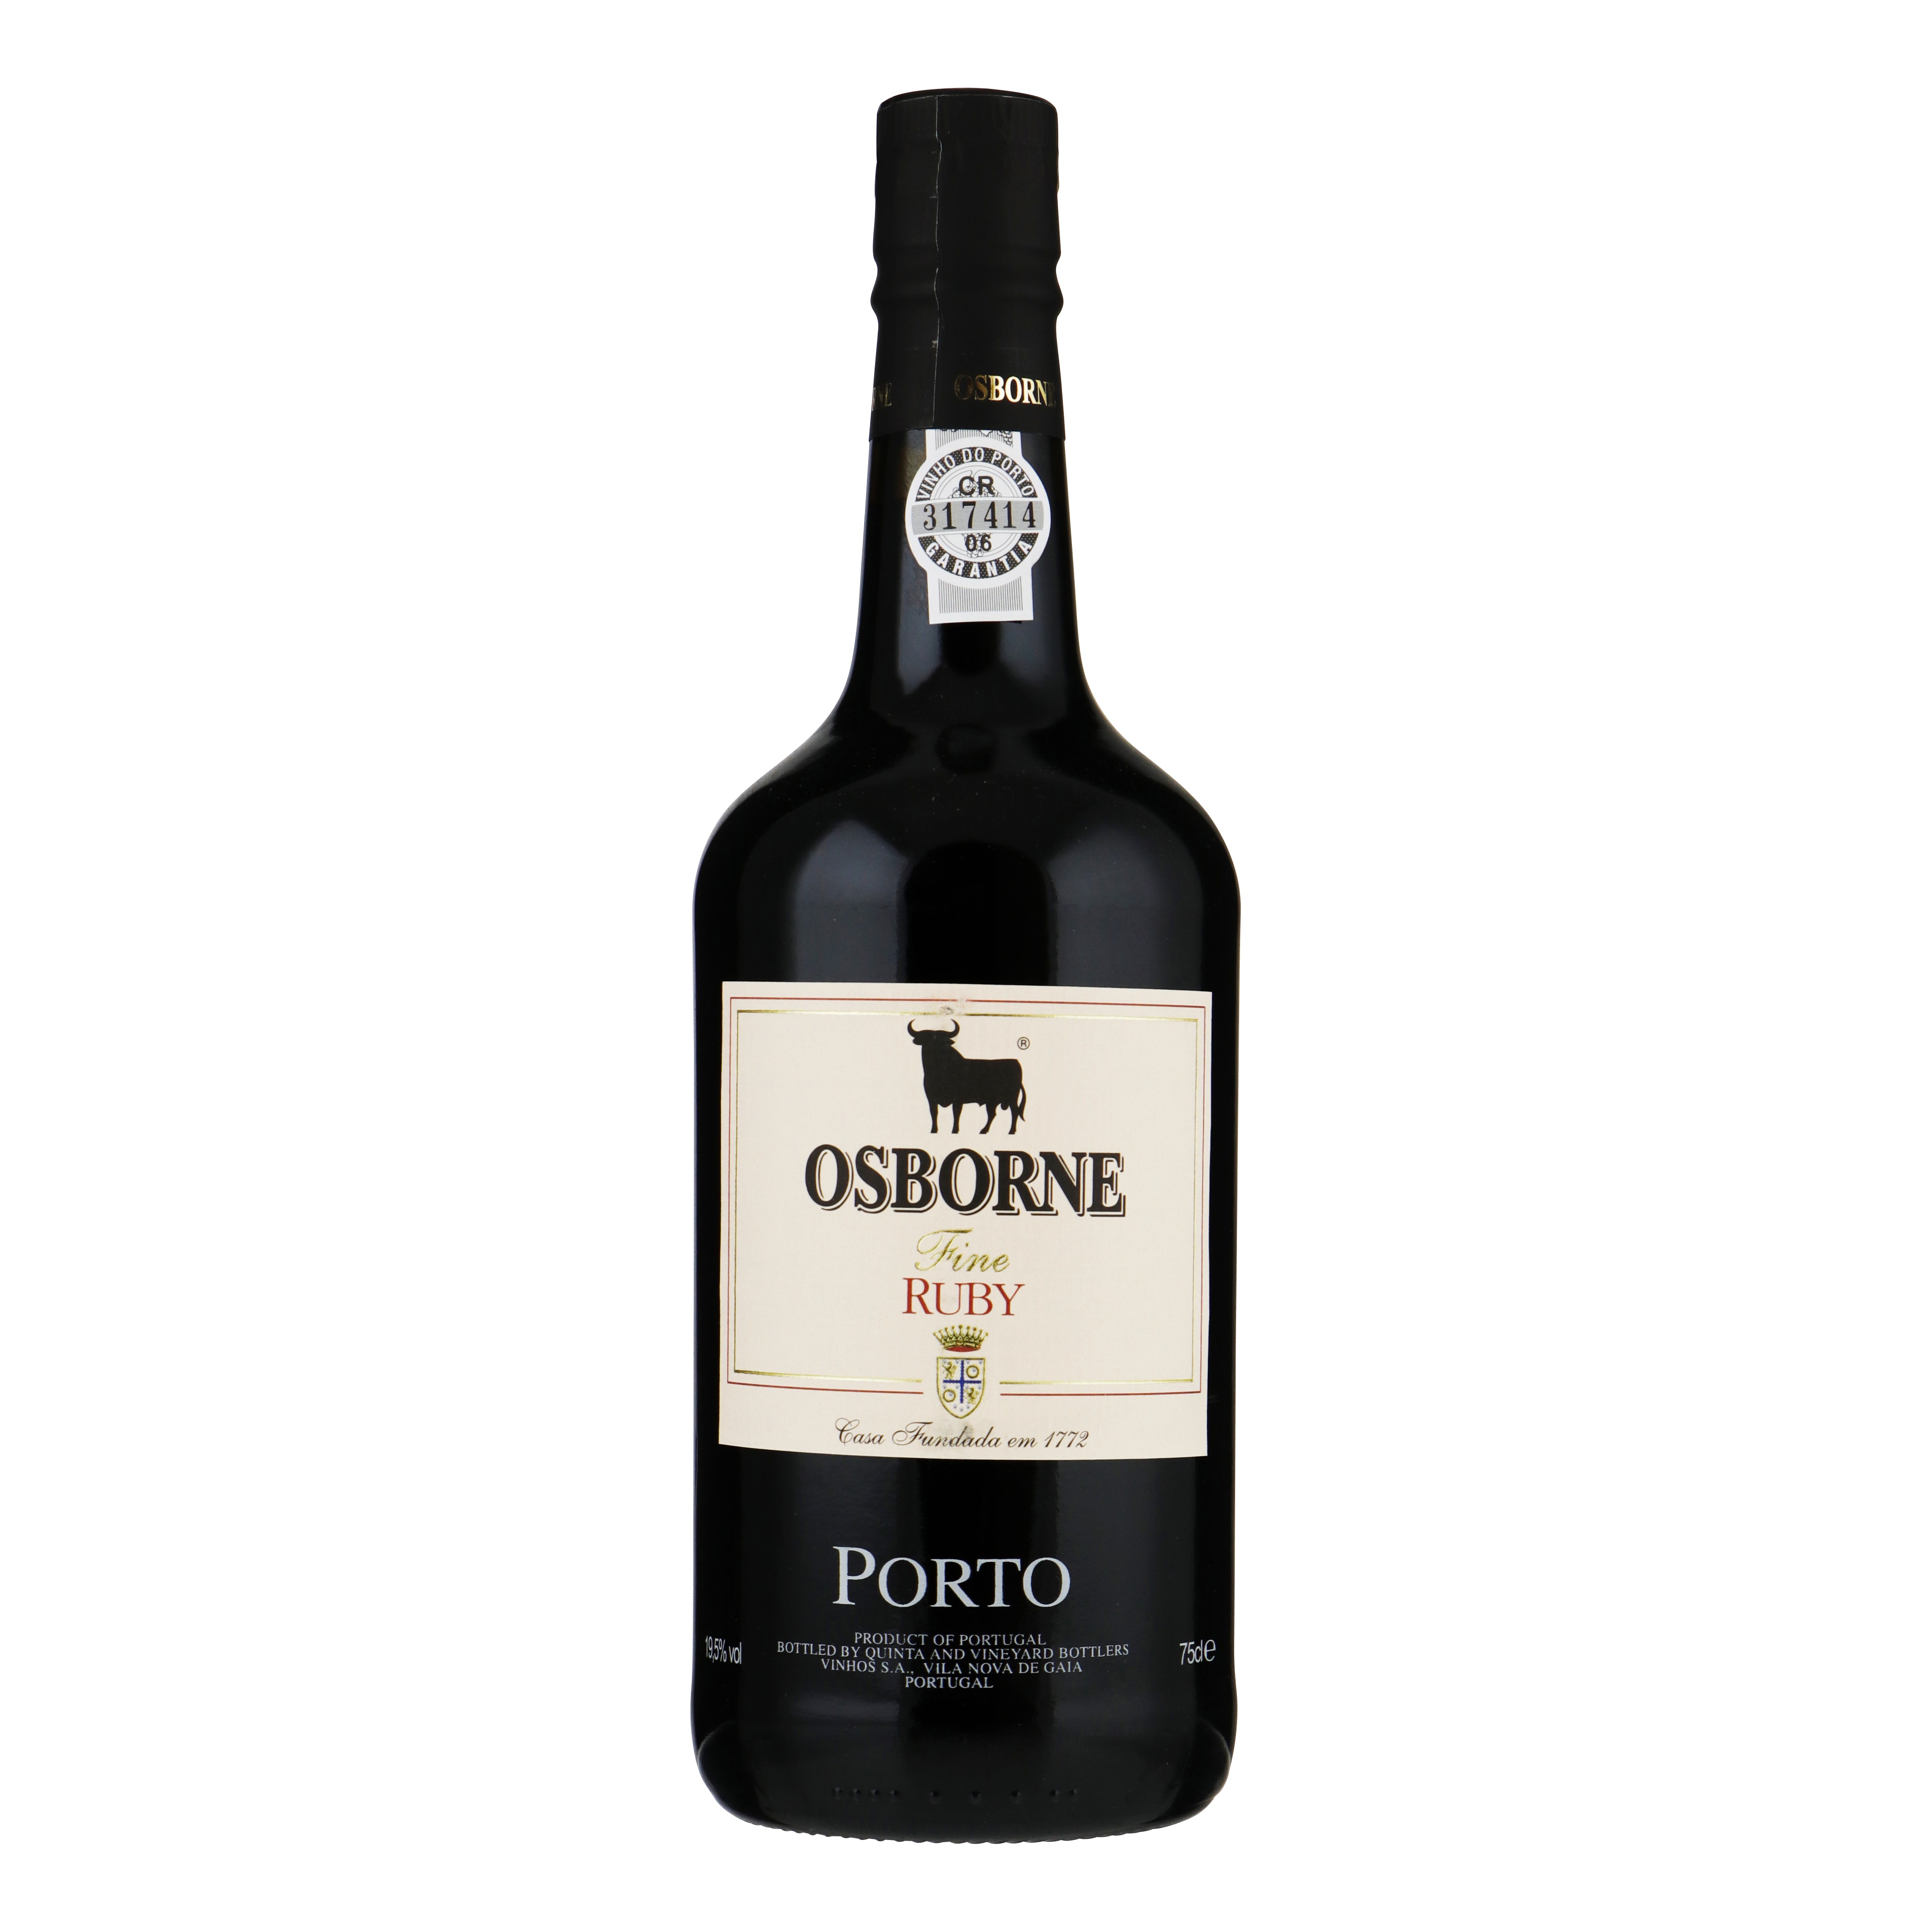 70888 Osborne Porto ruby 0,75 liter